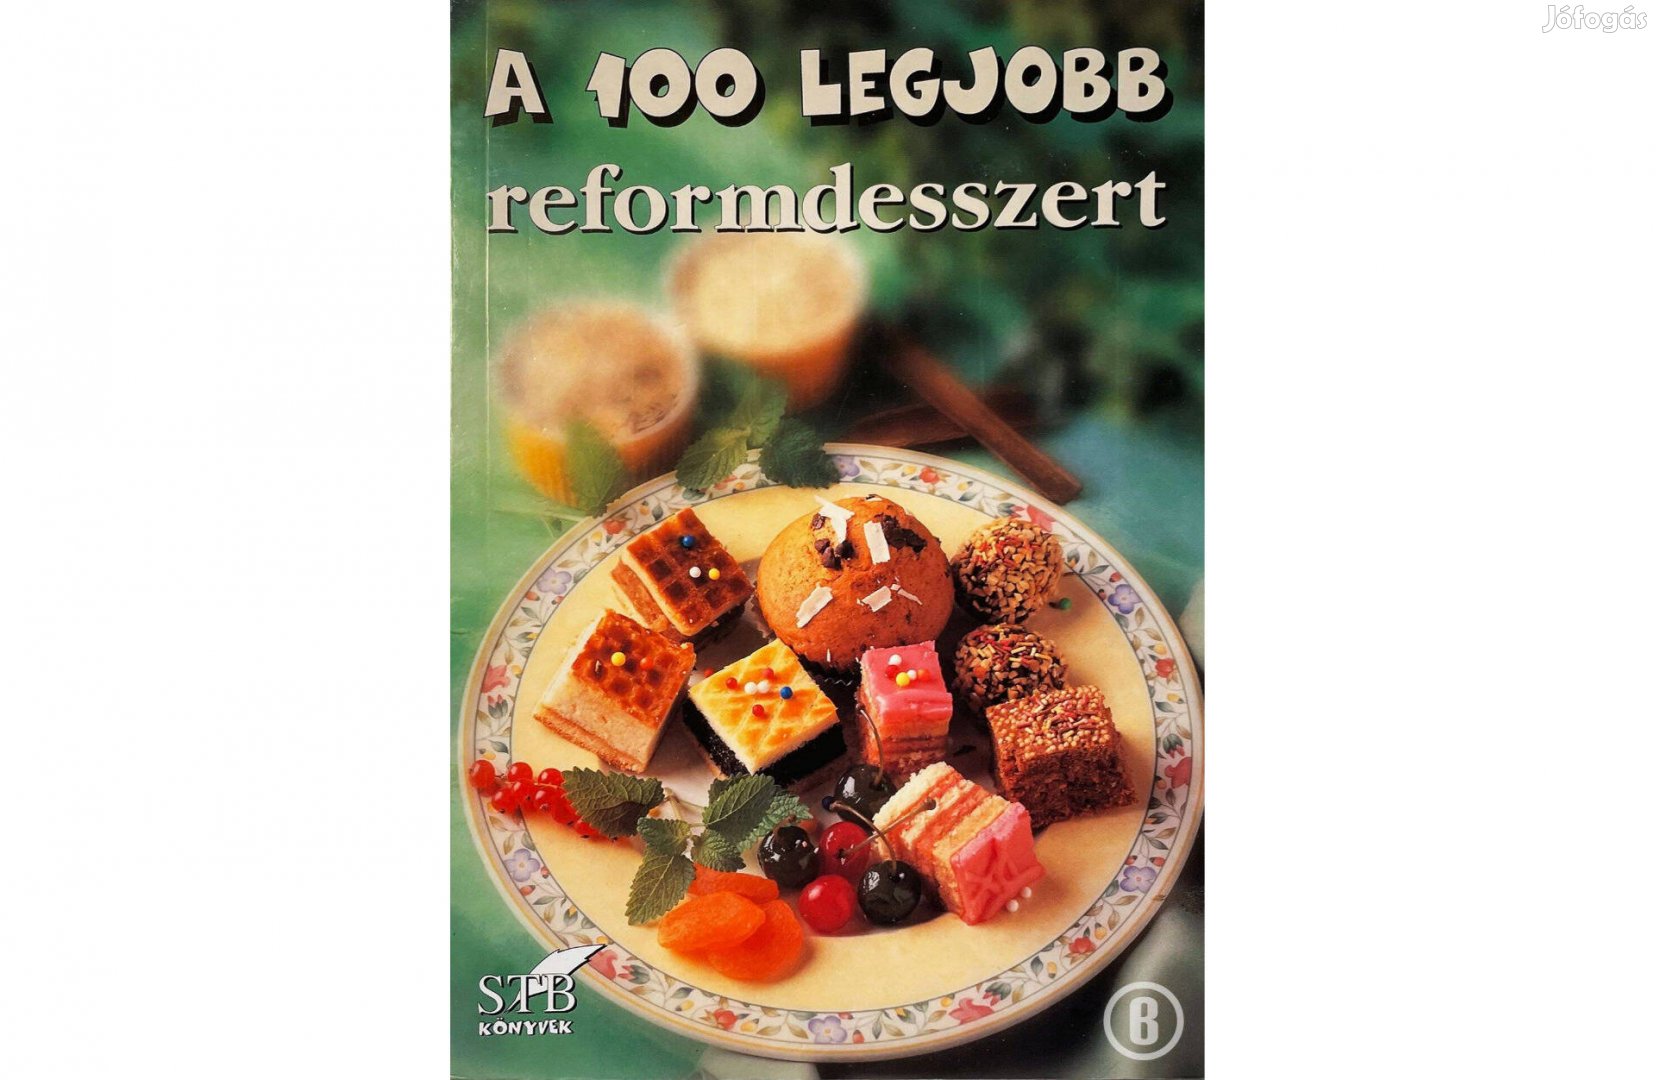 A 100 legjobb reformdesszert (70. kötet / szerk. Toró Elza)